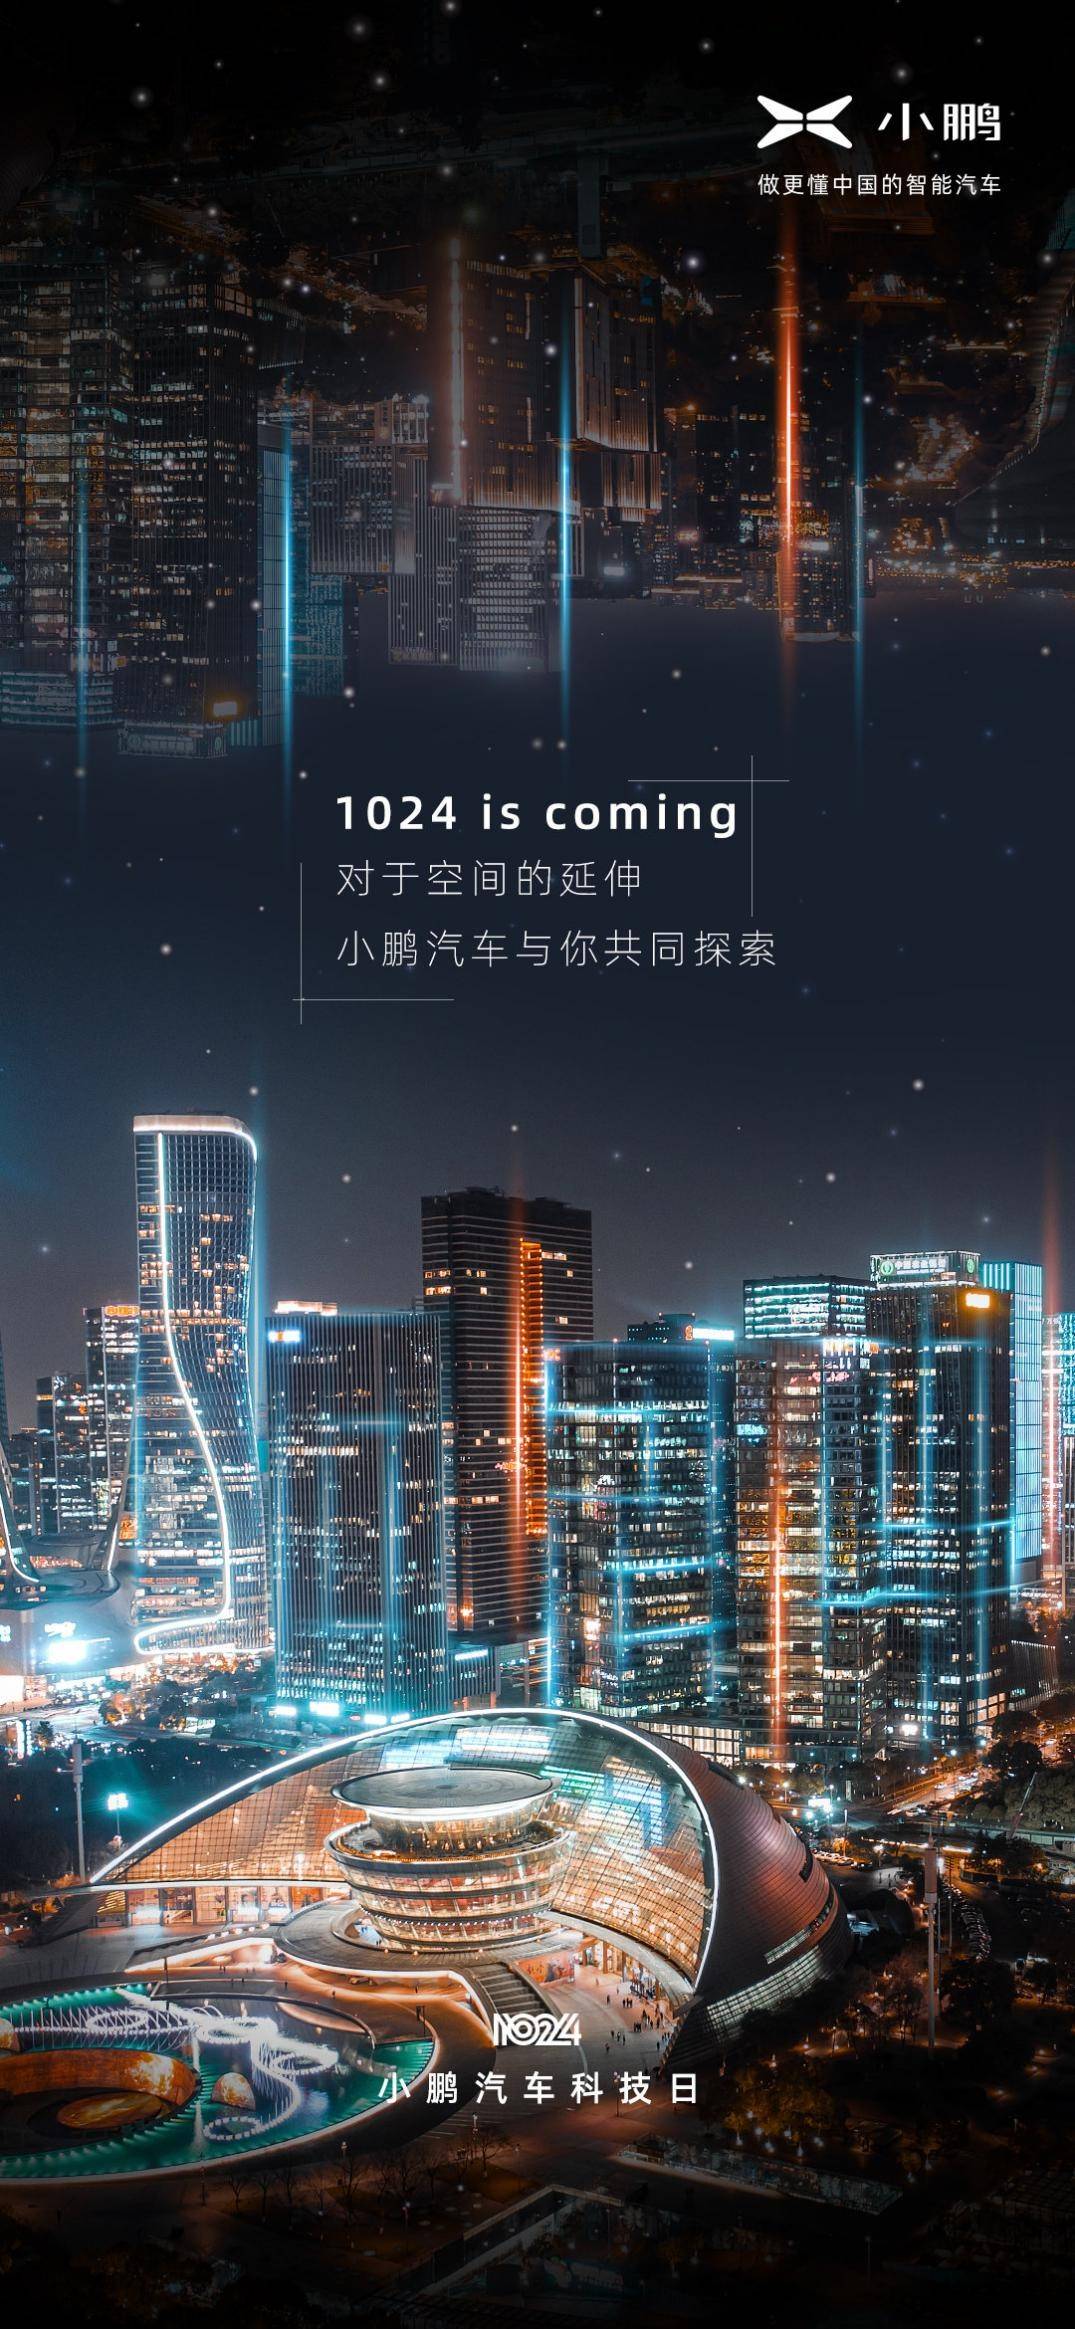 毛儿盖镇开展庆祝建党101周年系列活动 - 中国网